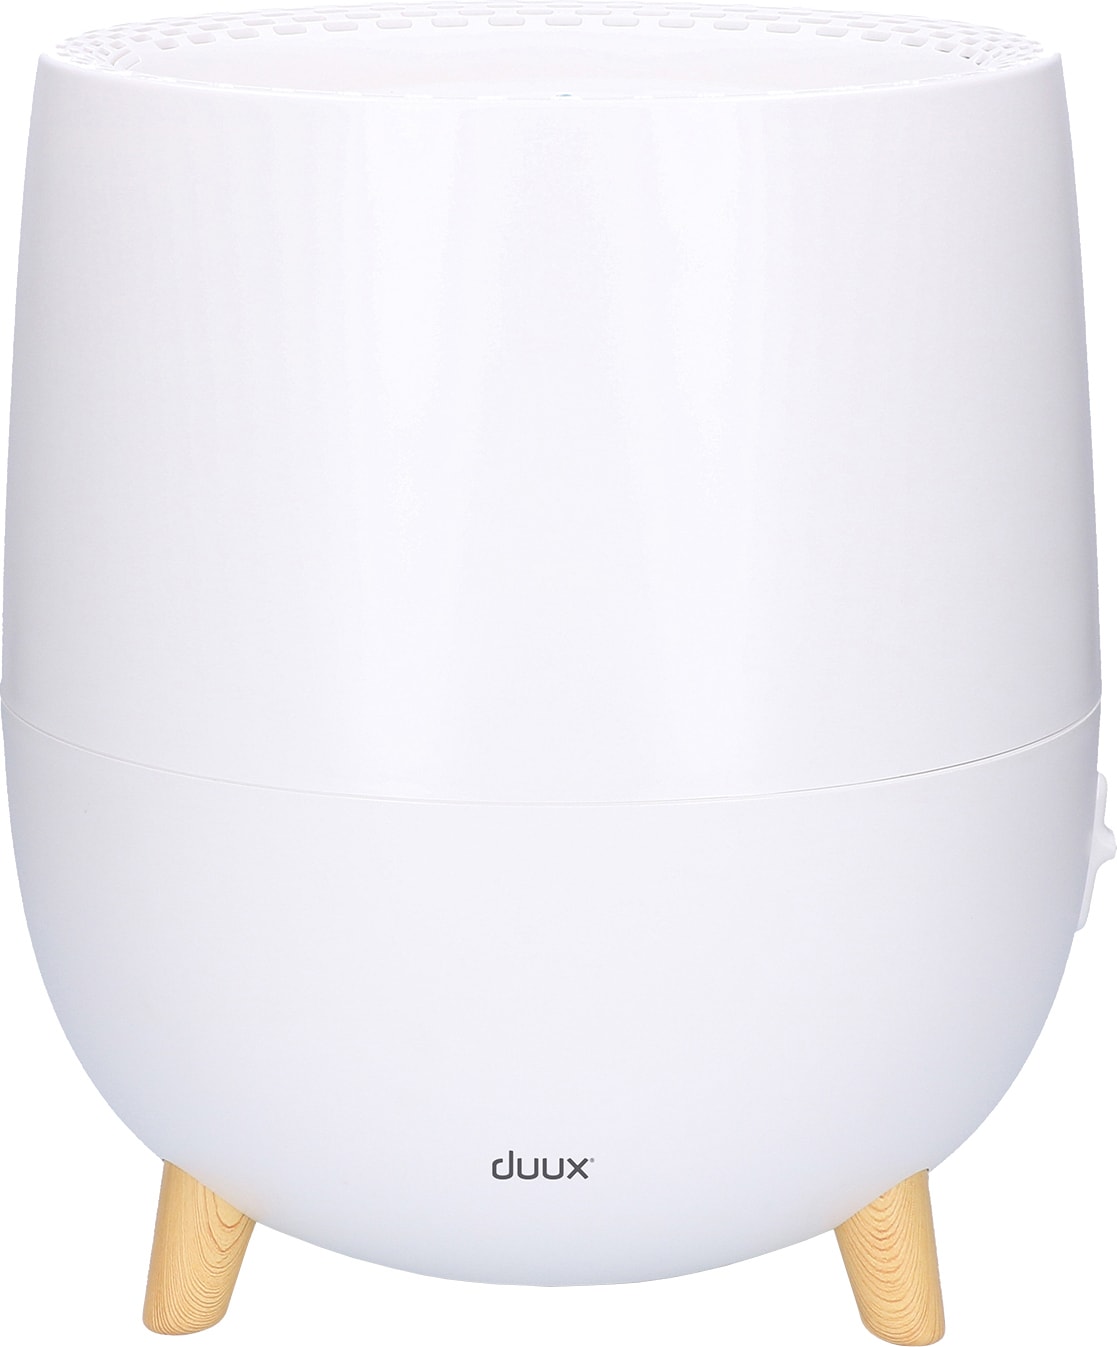 Duux OVI ilmankostutin 8716164997125 - Gigantti verkkokauppa